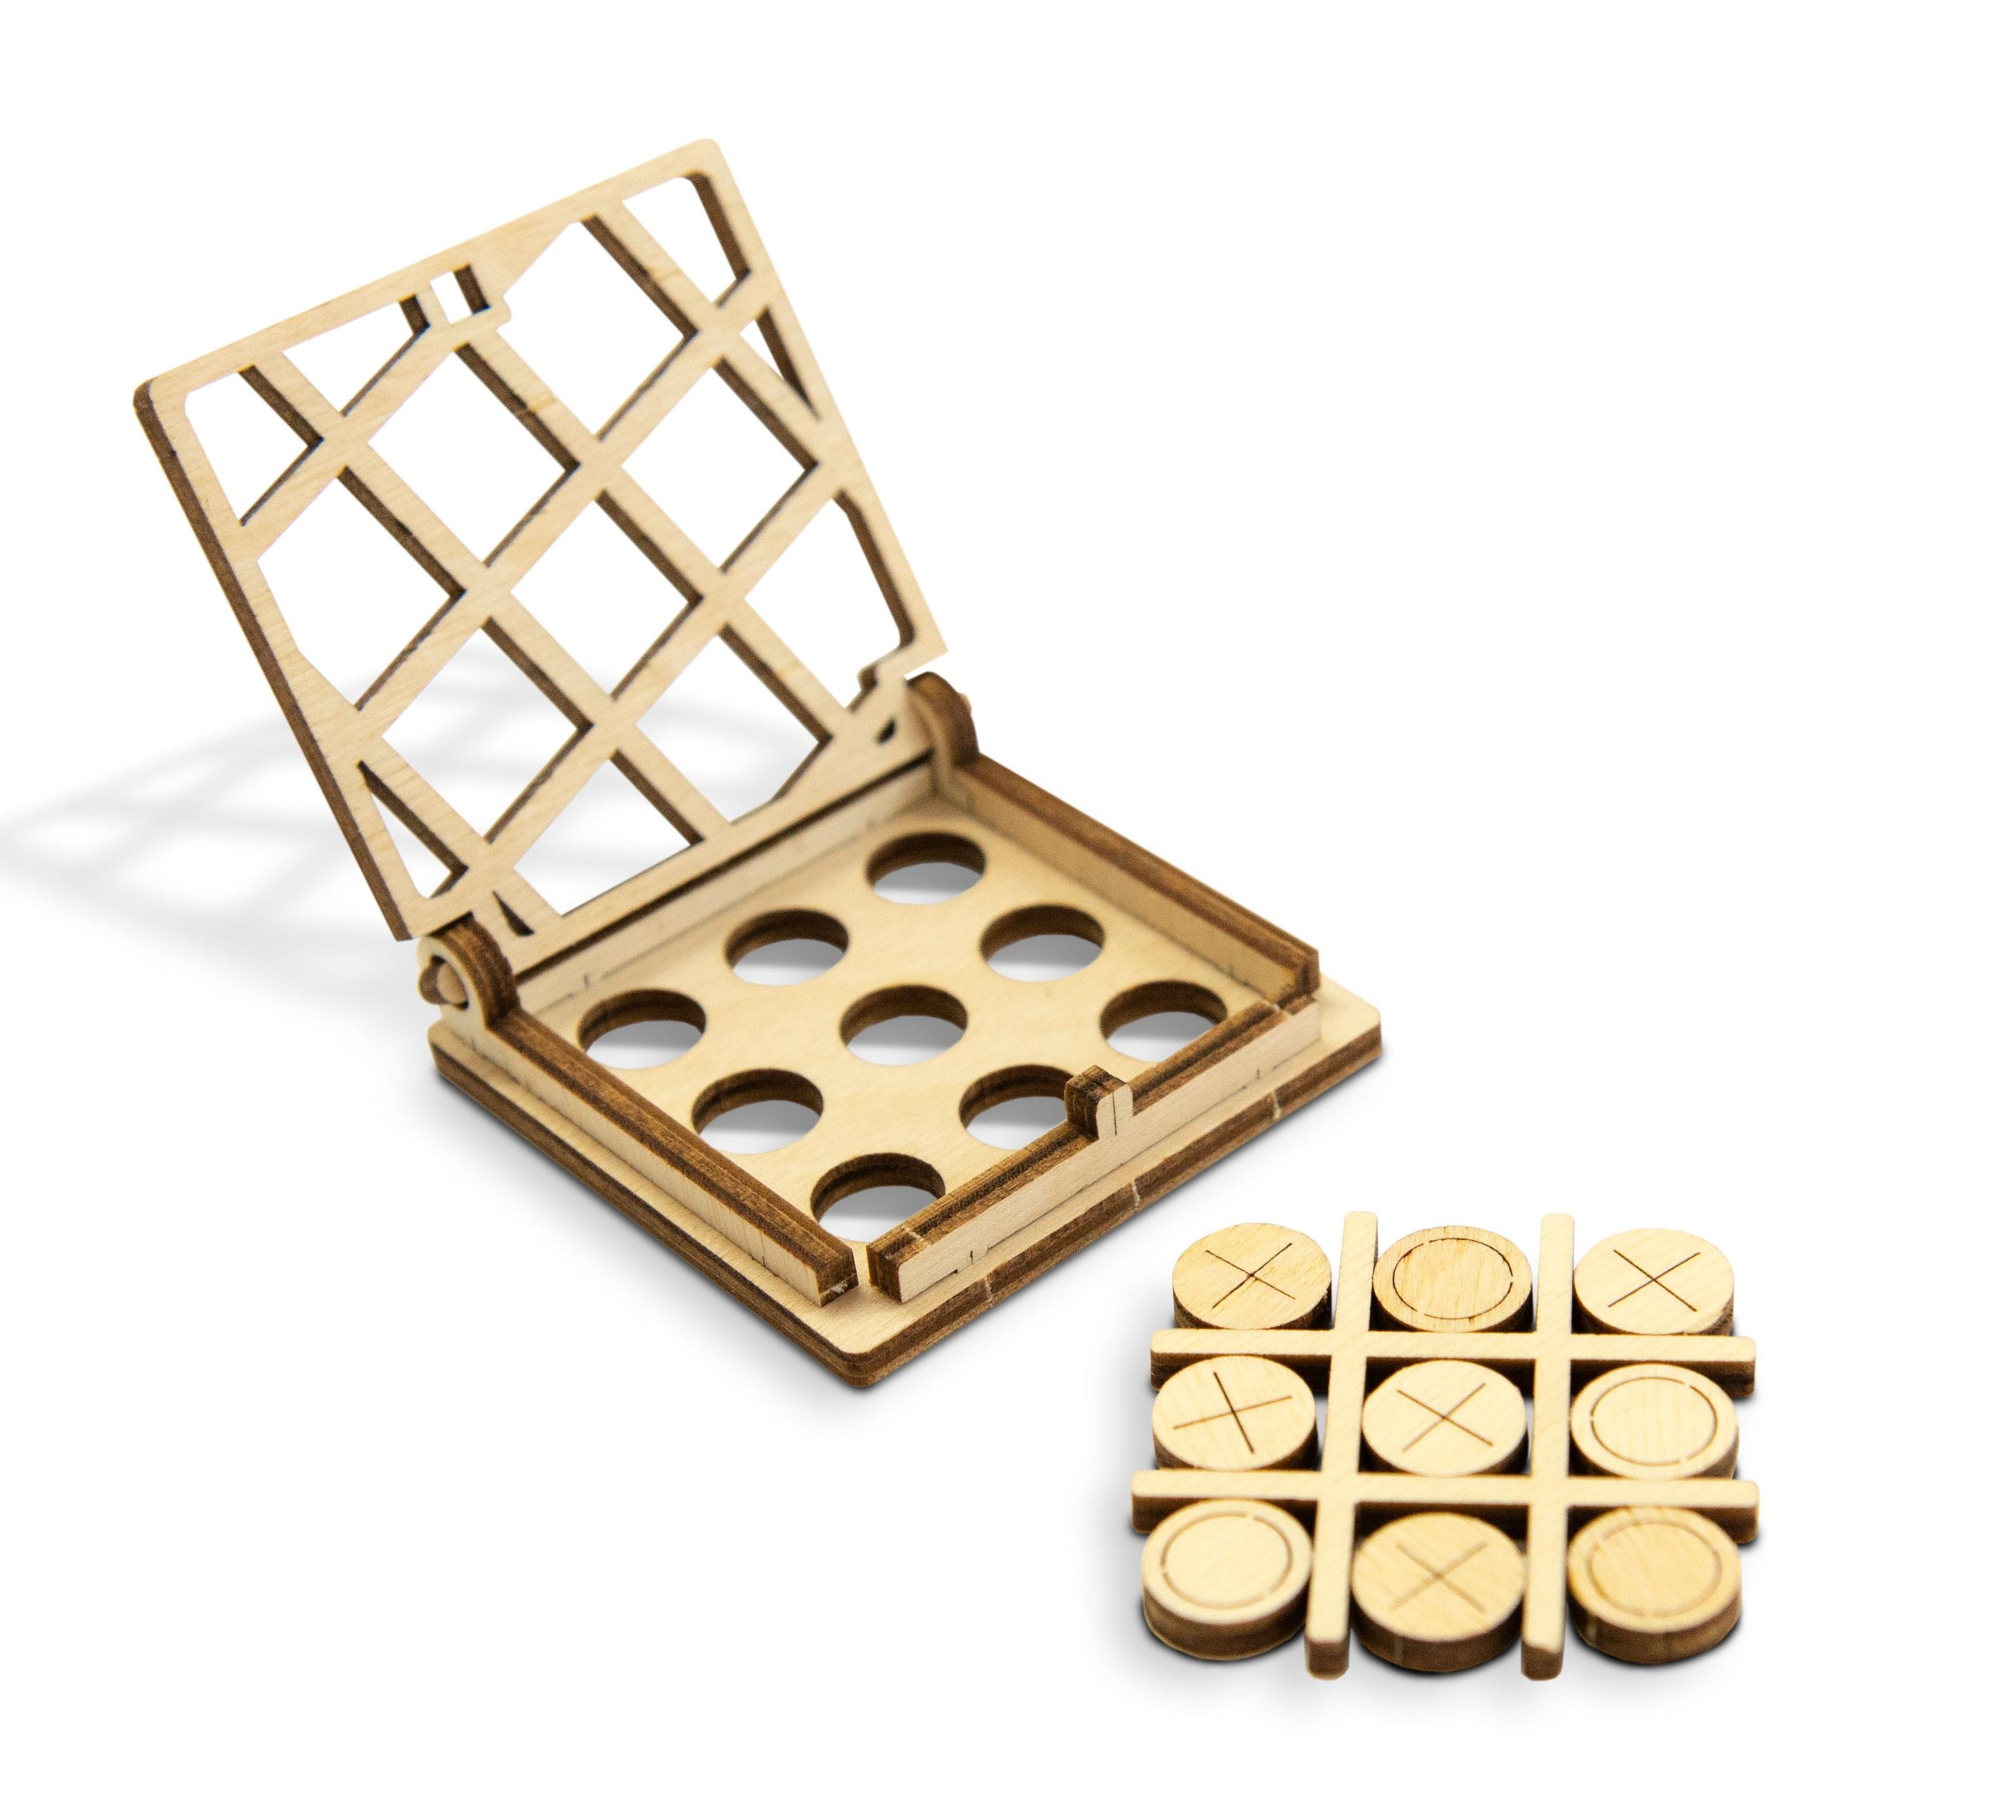 Wooden 3D Puzzle - Tic-Tac-Toe Game No. 2